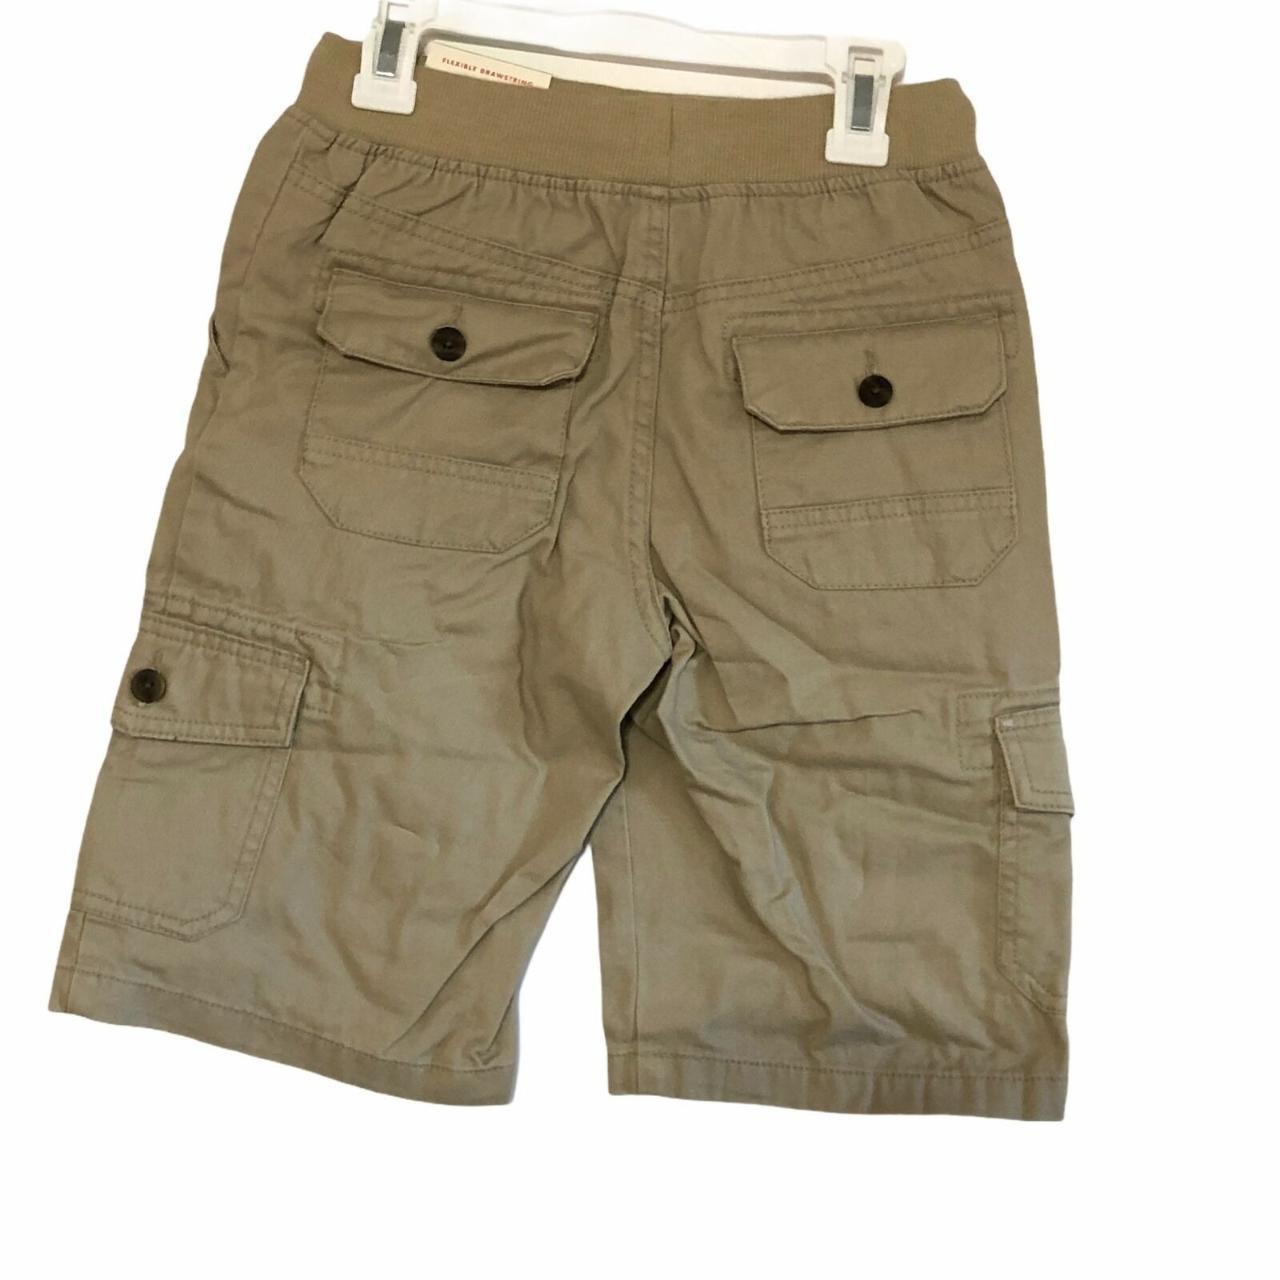 NWT Boys Cargo Shorts Pull On Pockets Bermuda Beige... - Depop